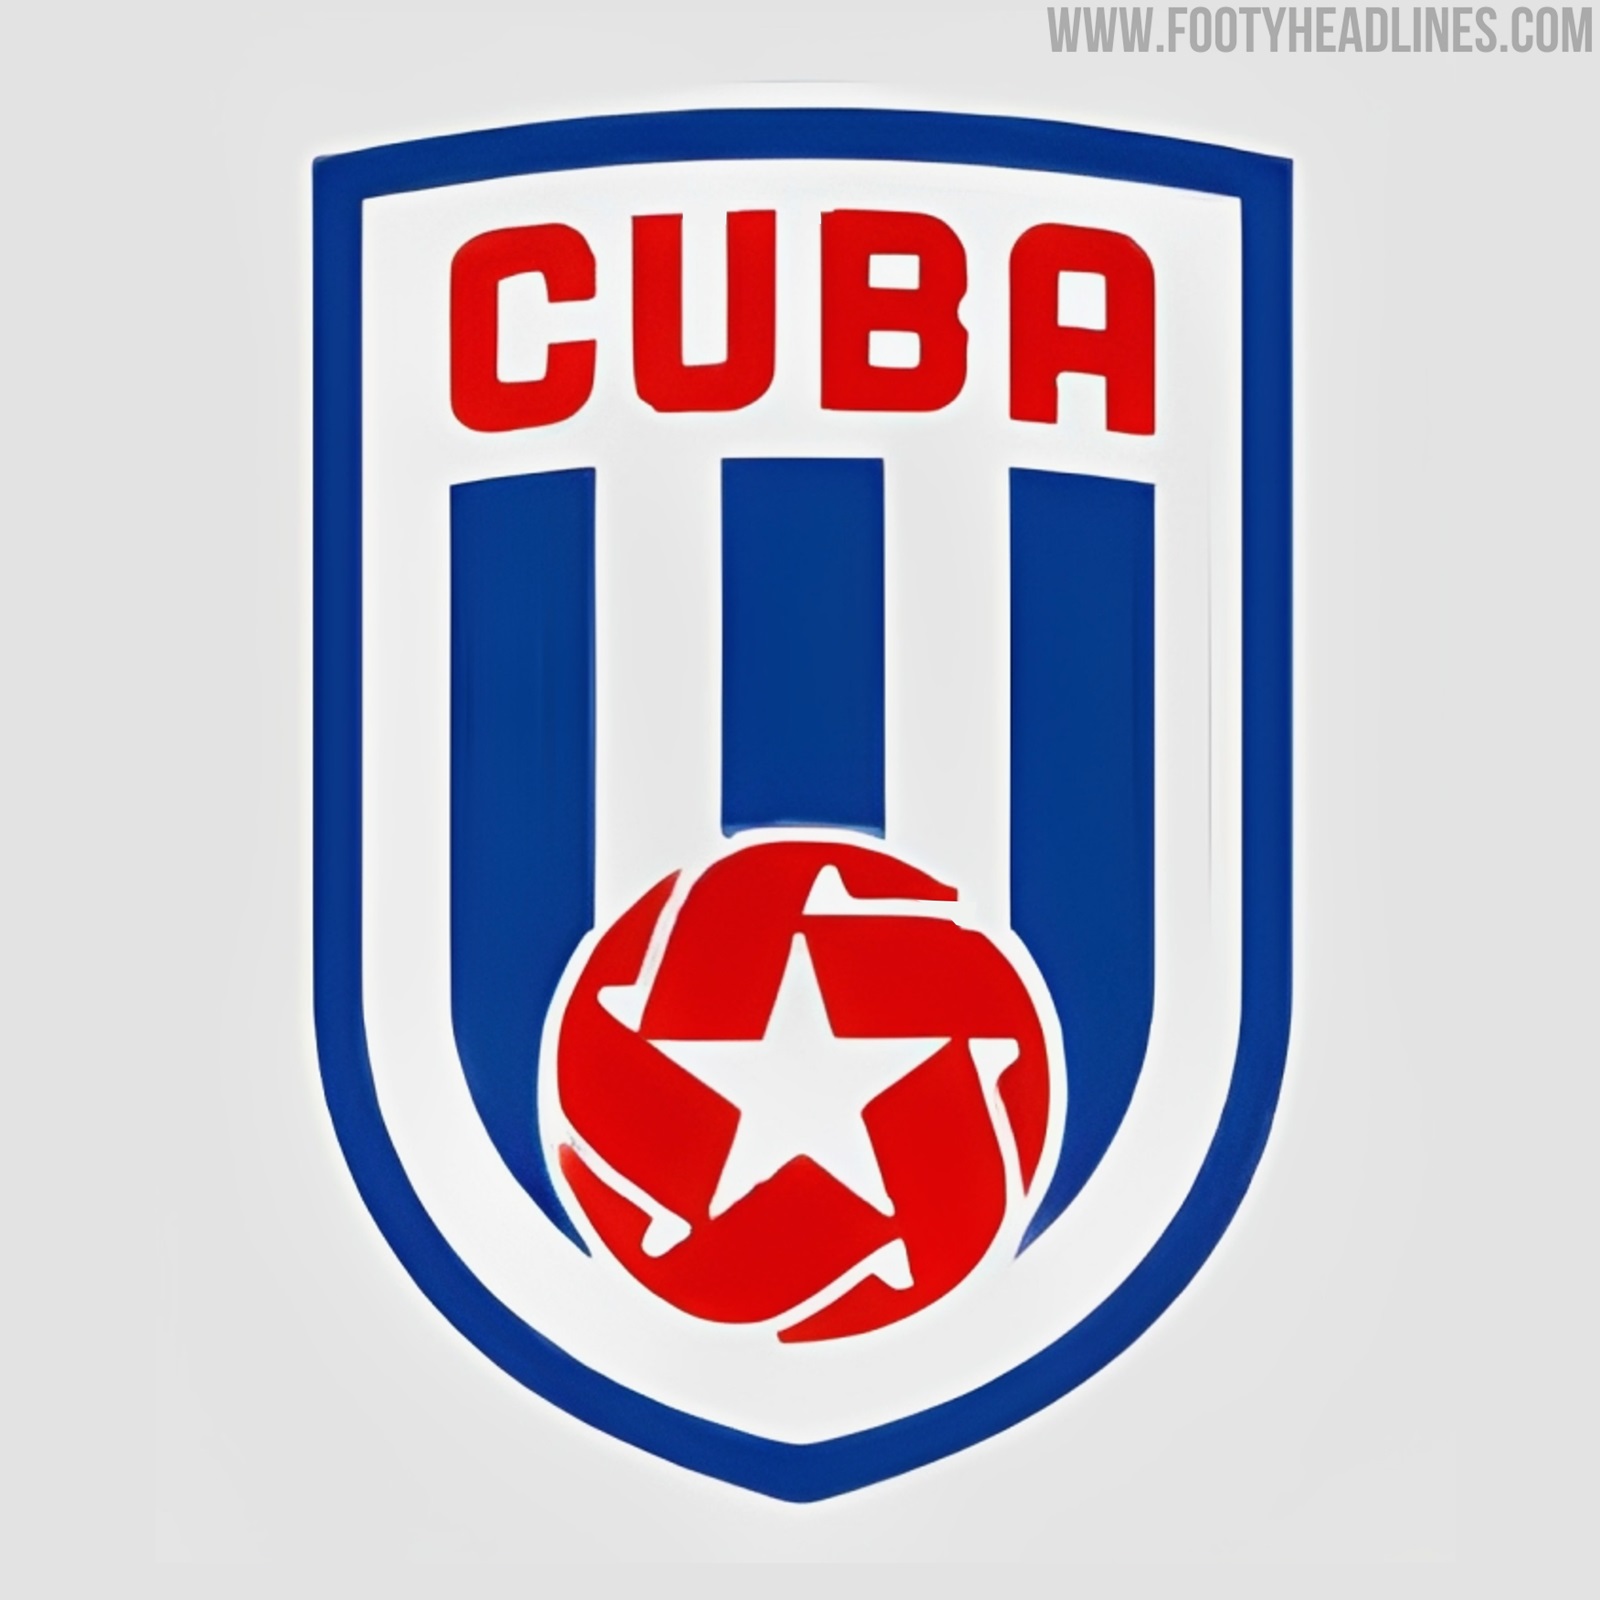 All-New Cuba Logo Released - Footy Headlines